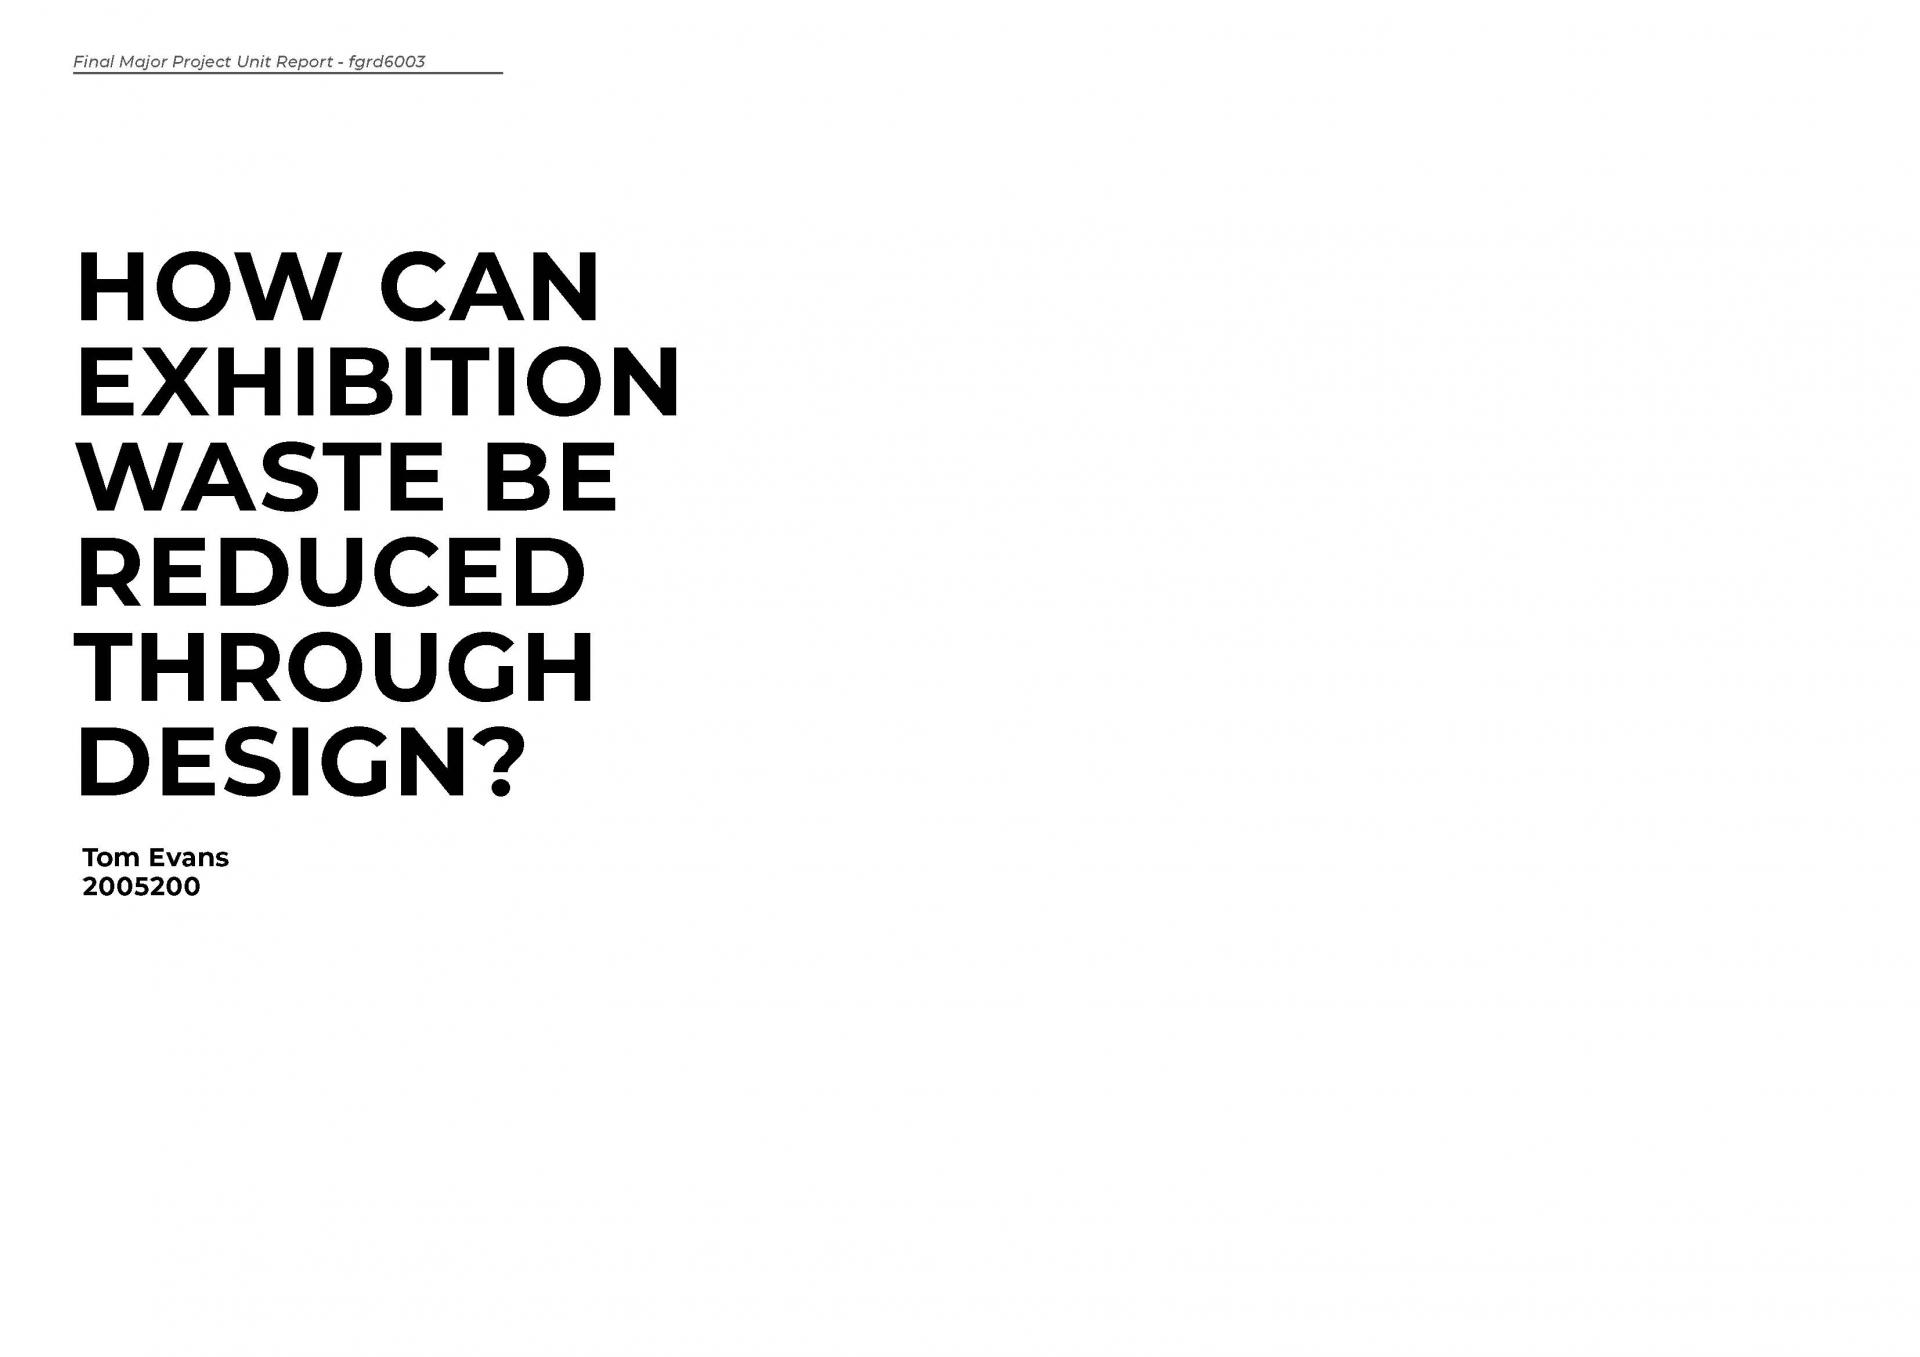 Tom Evans | Graphic Design 3